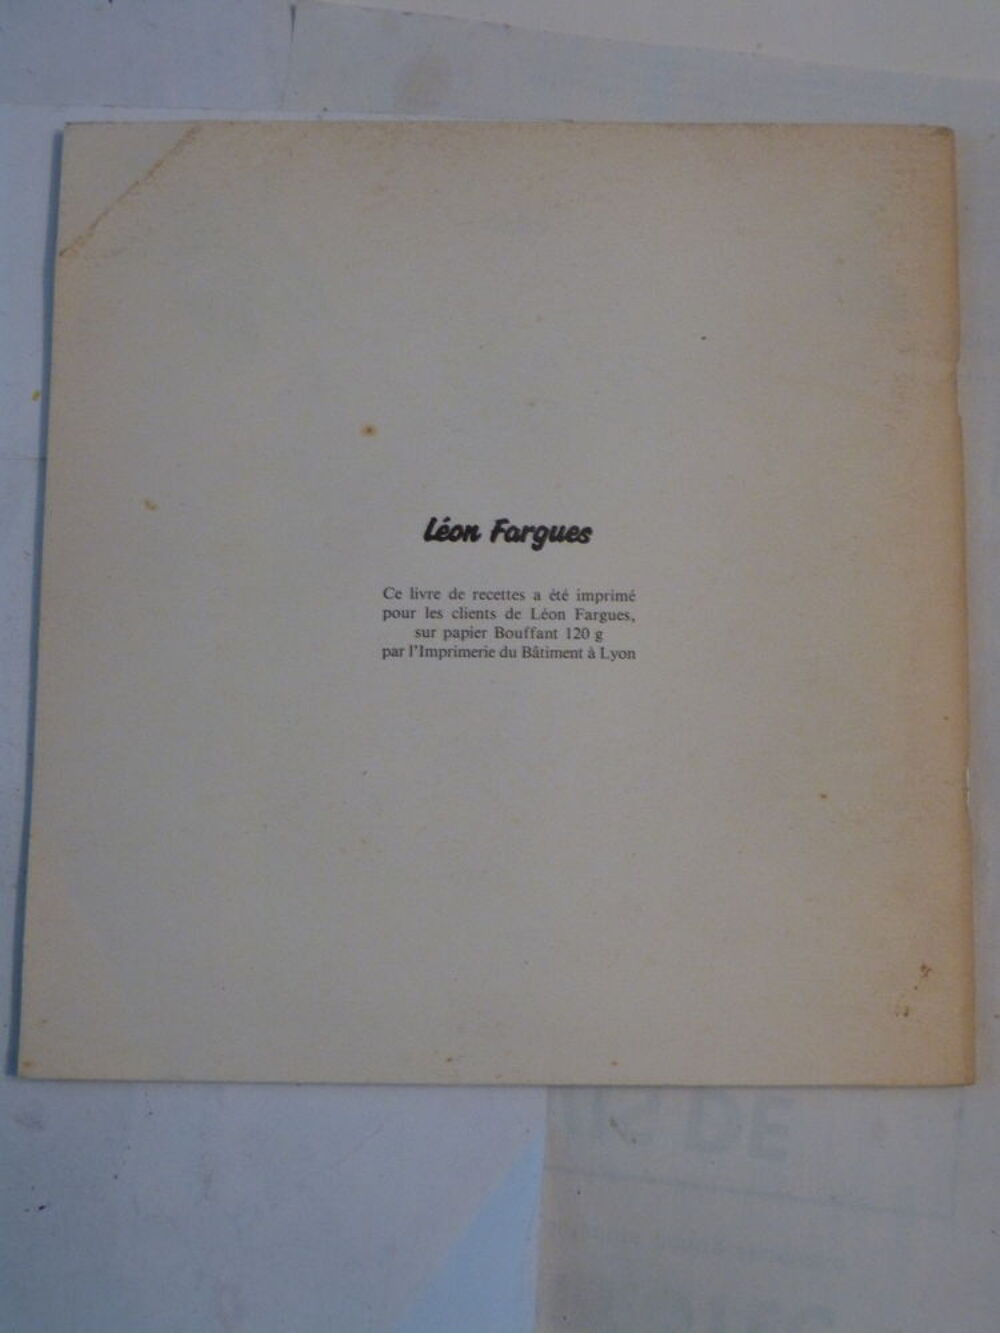  LA CUISINE ET LA CAMPAGNE DE PROVENCE par G. CLAYTON Livres et BD